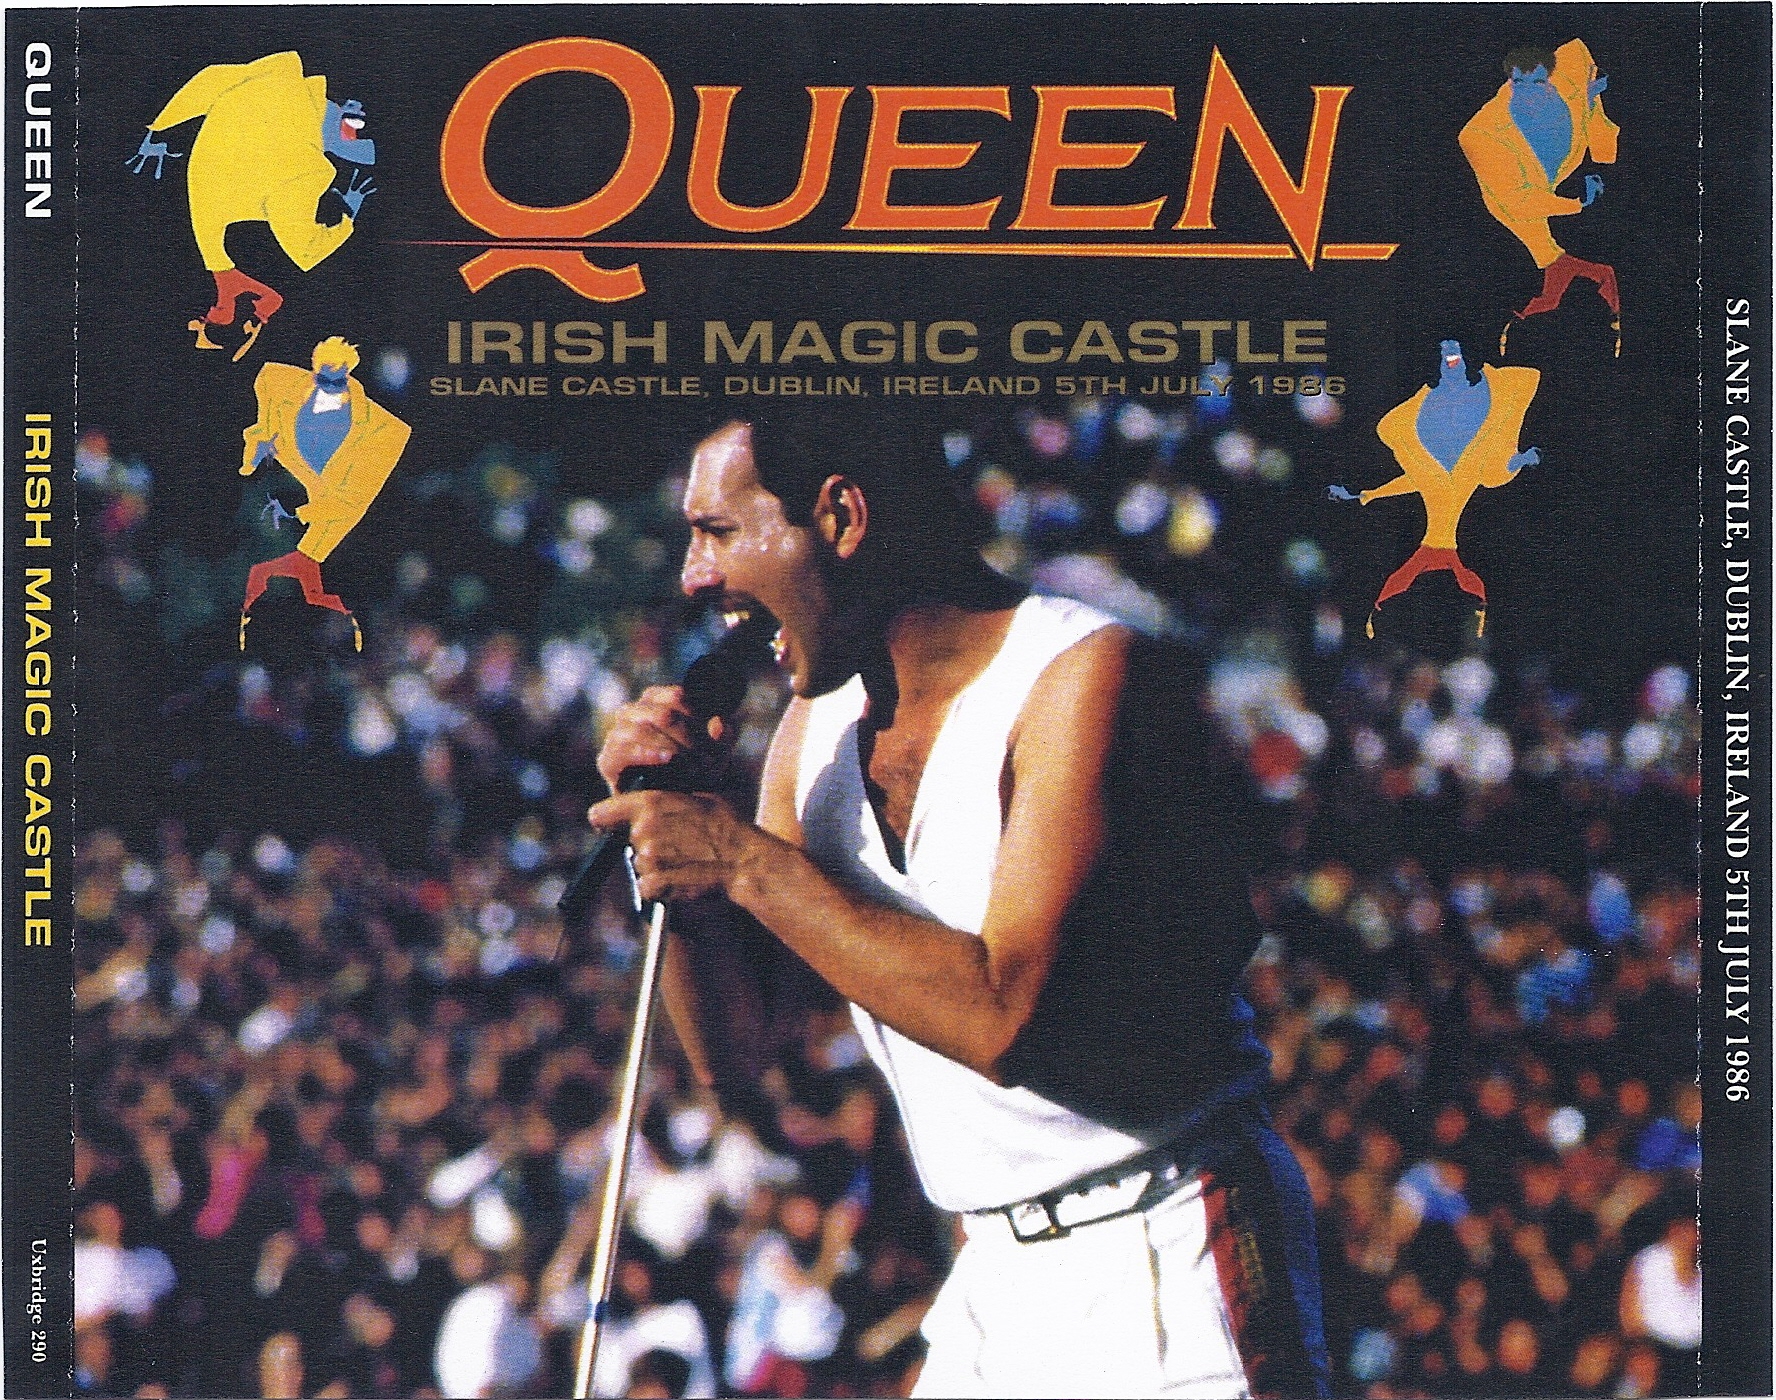 Queen1986-07-05SlaneCastleUxbridgeUK (6).jpg